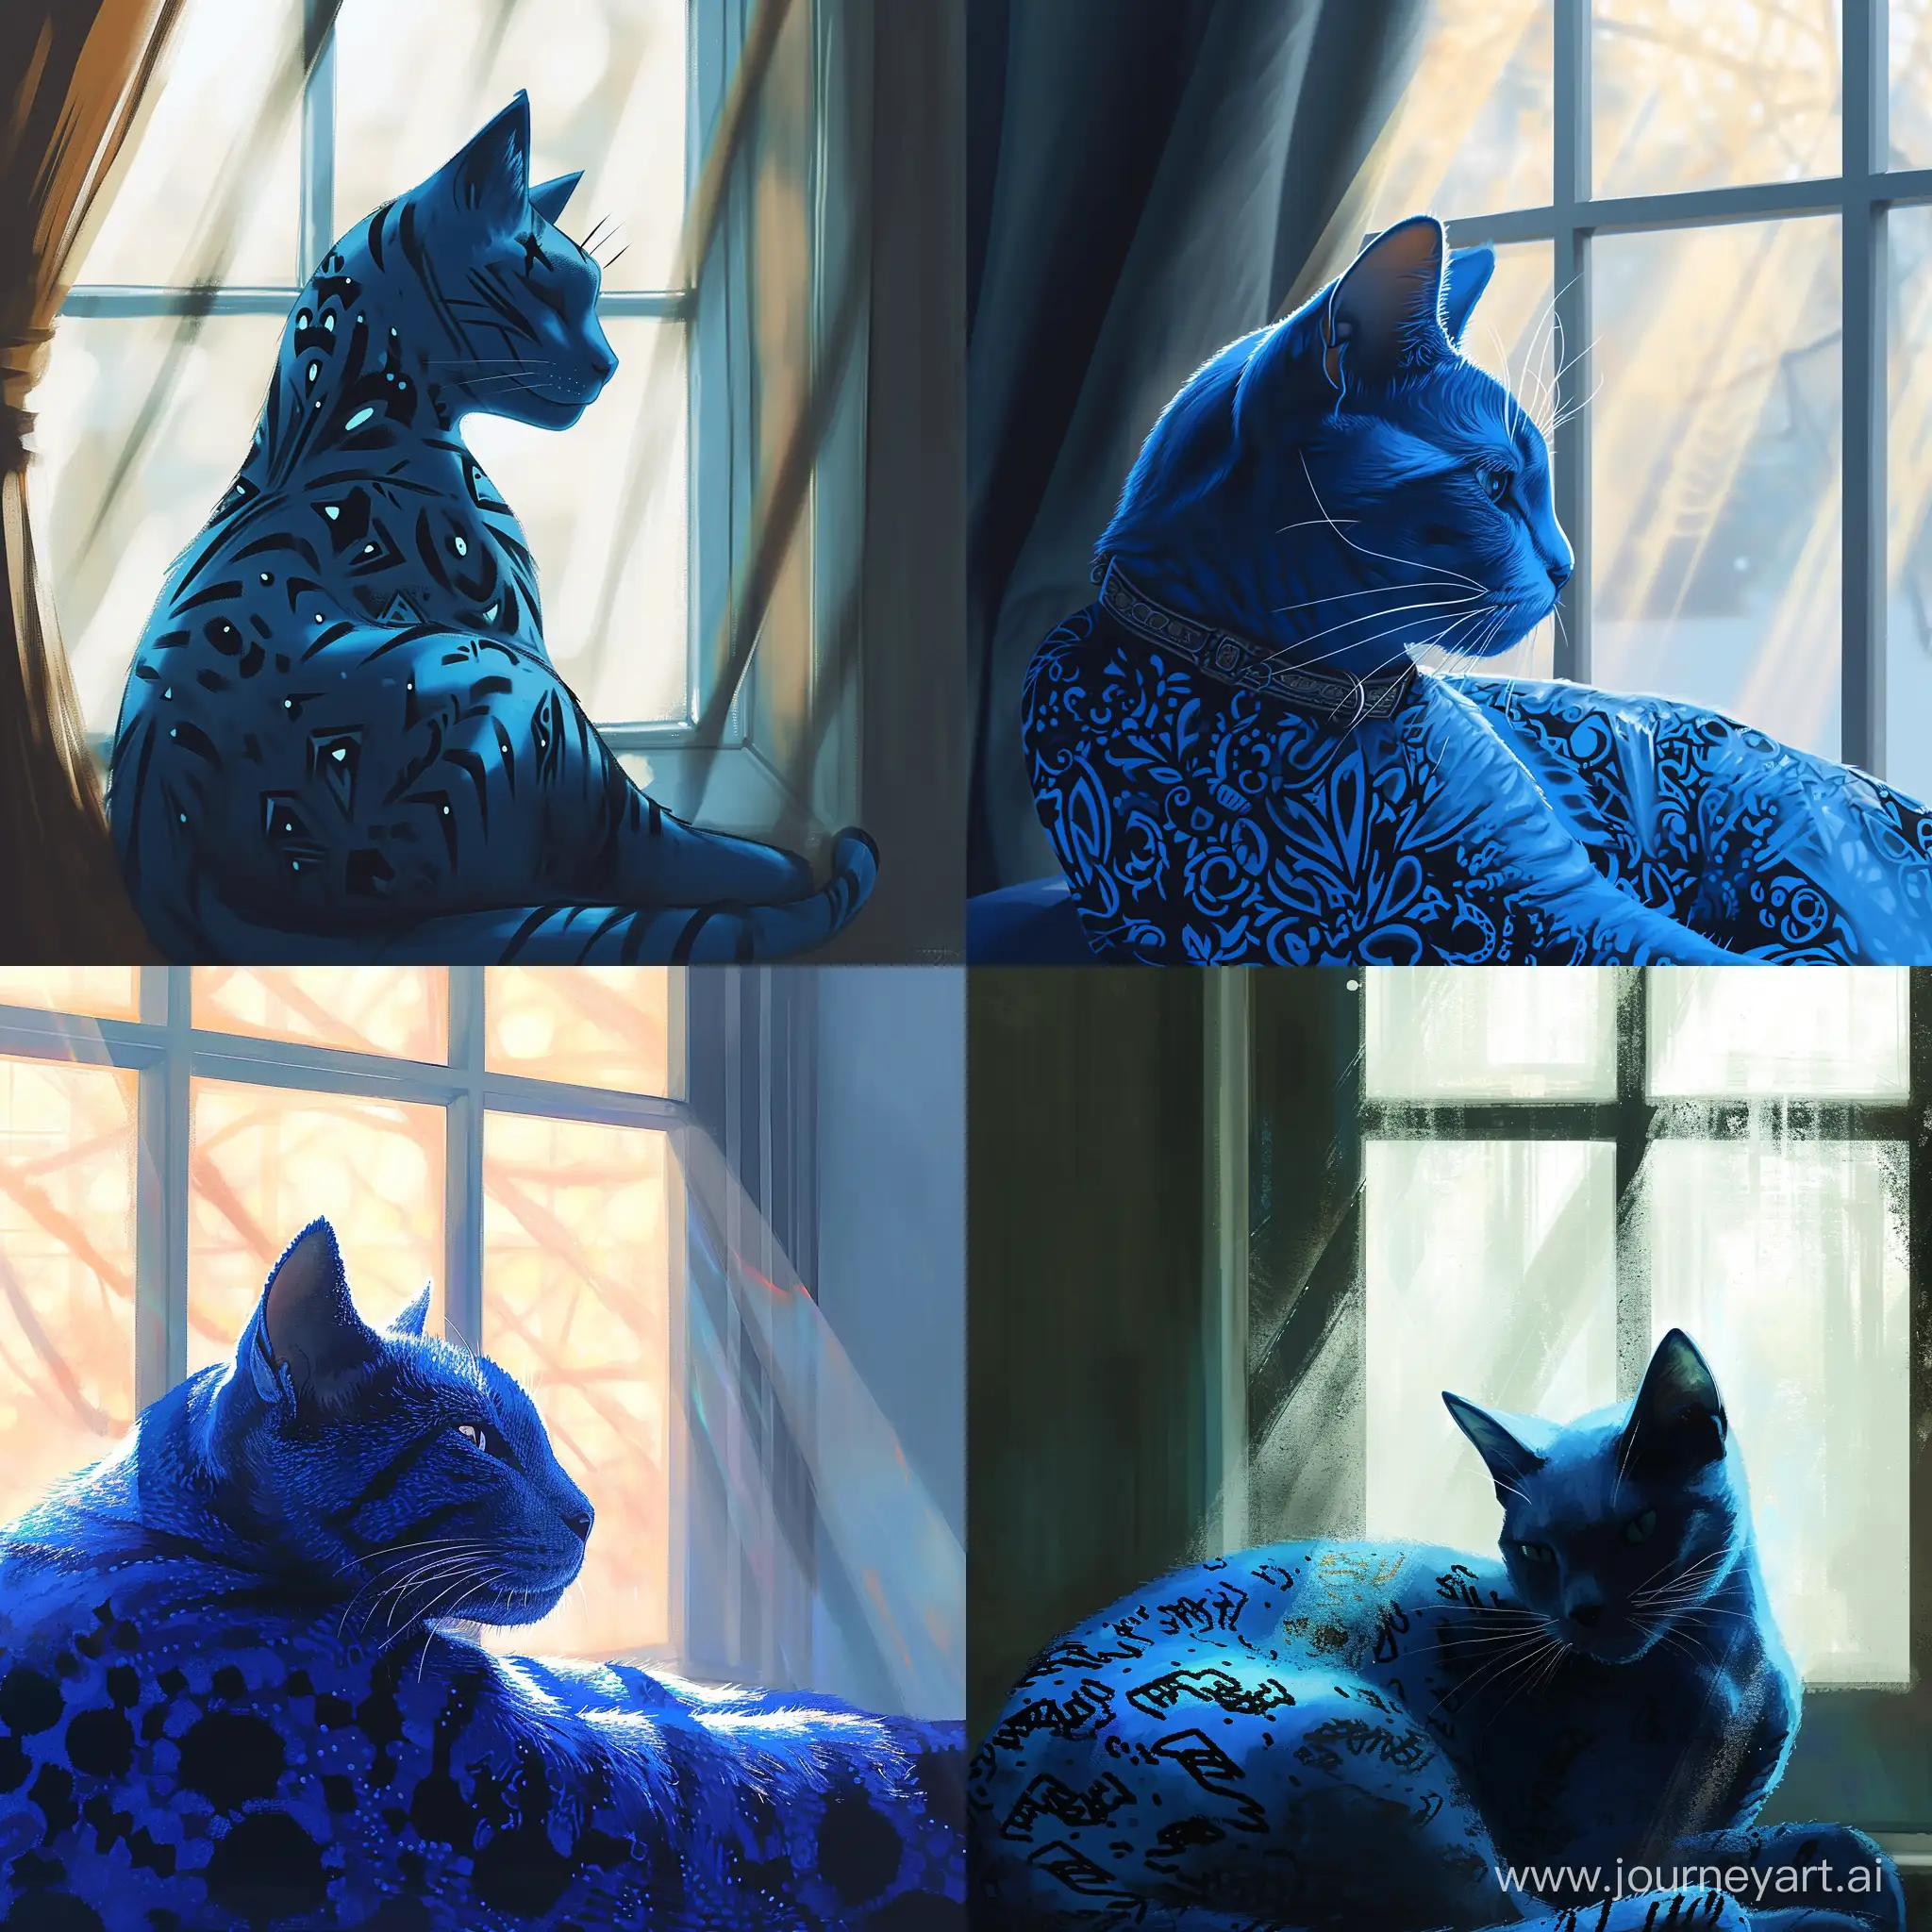 минимализм1.2, голубая кошка с черными узорами лениво на фоне окна, мягкий свет проникает через окна отбрасывая блики на кошку, --v 6